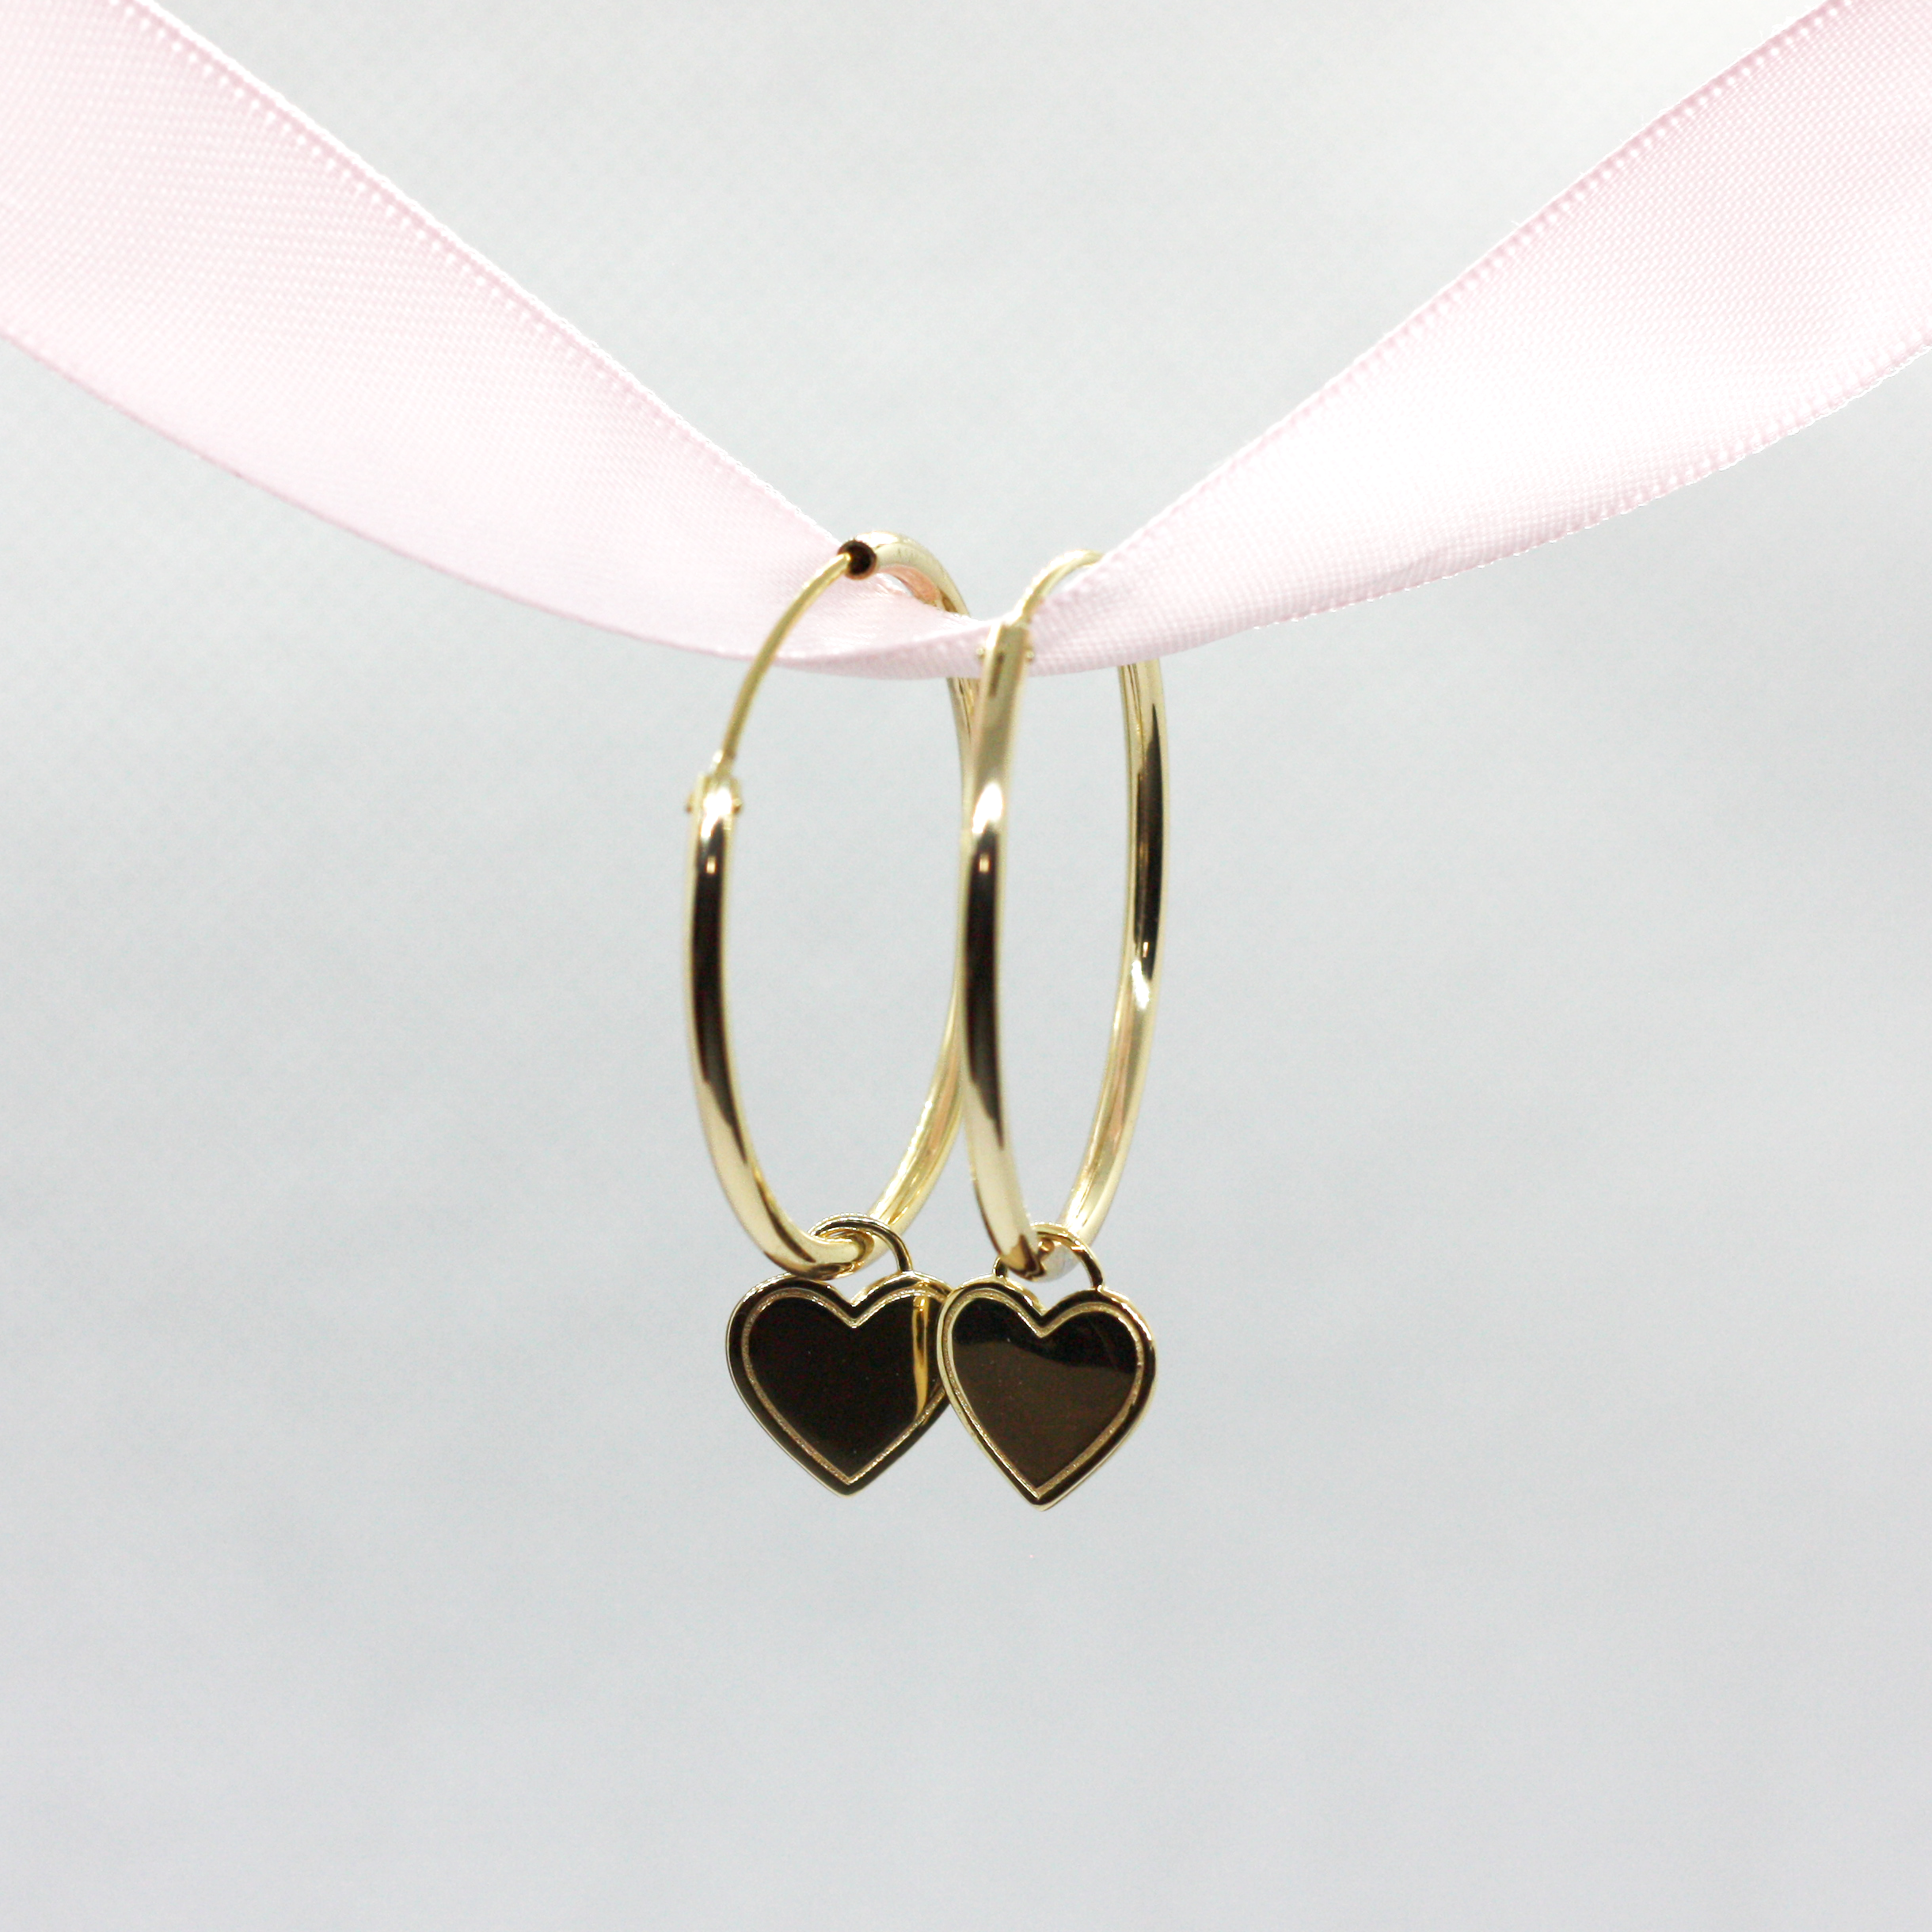 Self-Love Collection - Gold Hoop Earrings - Crowned